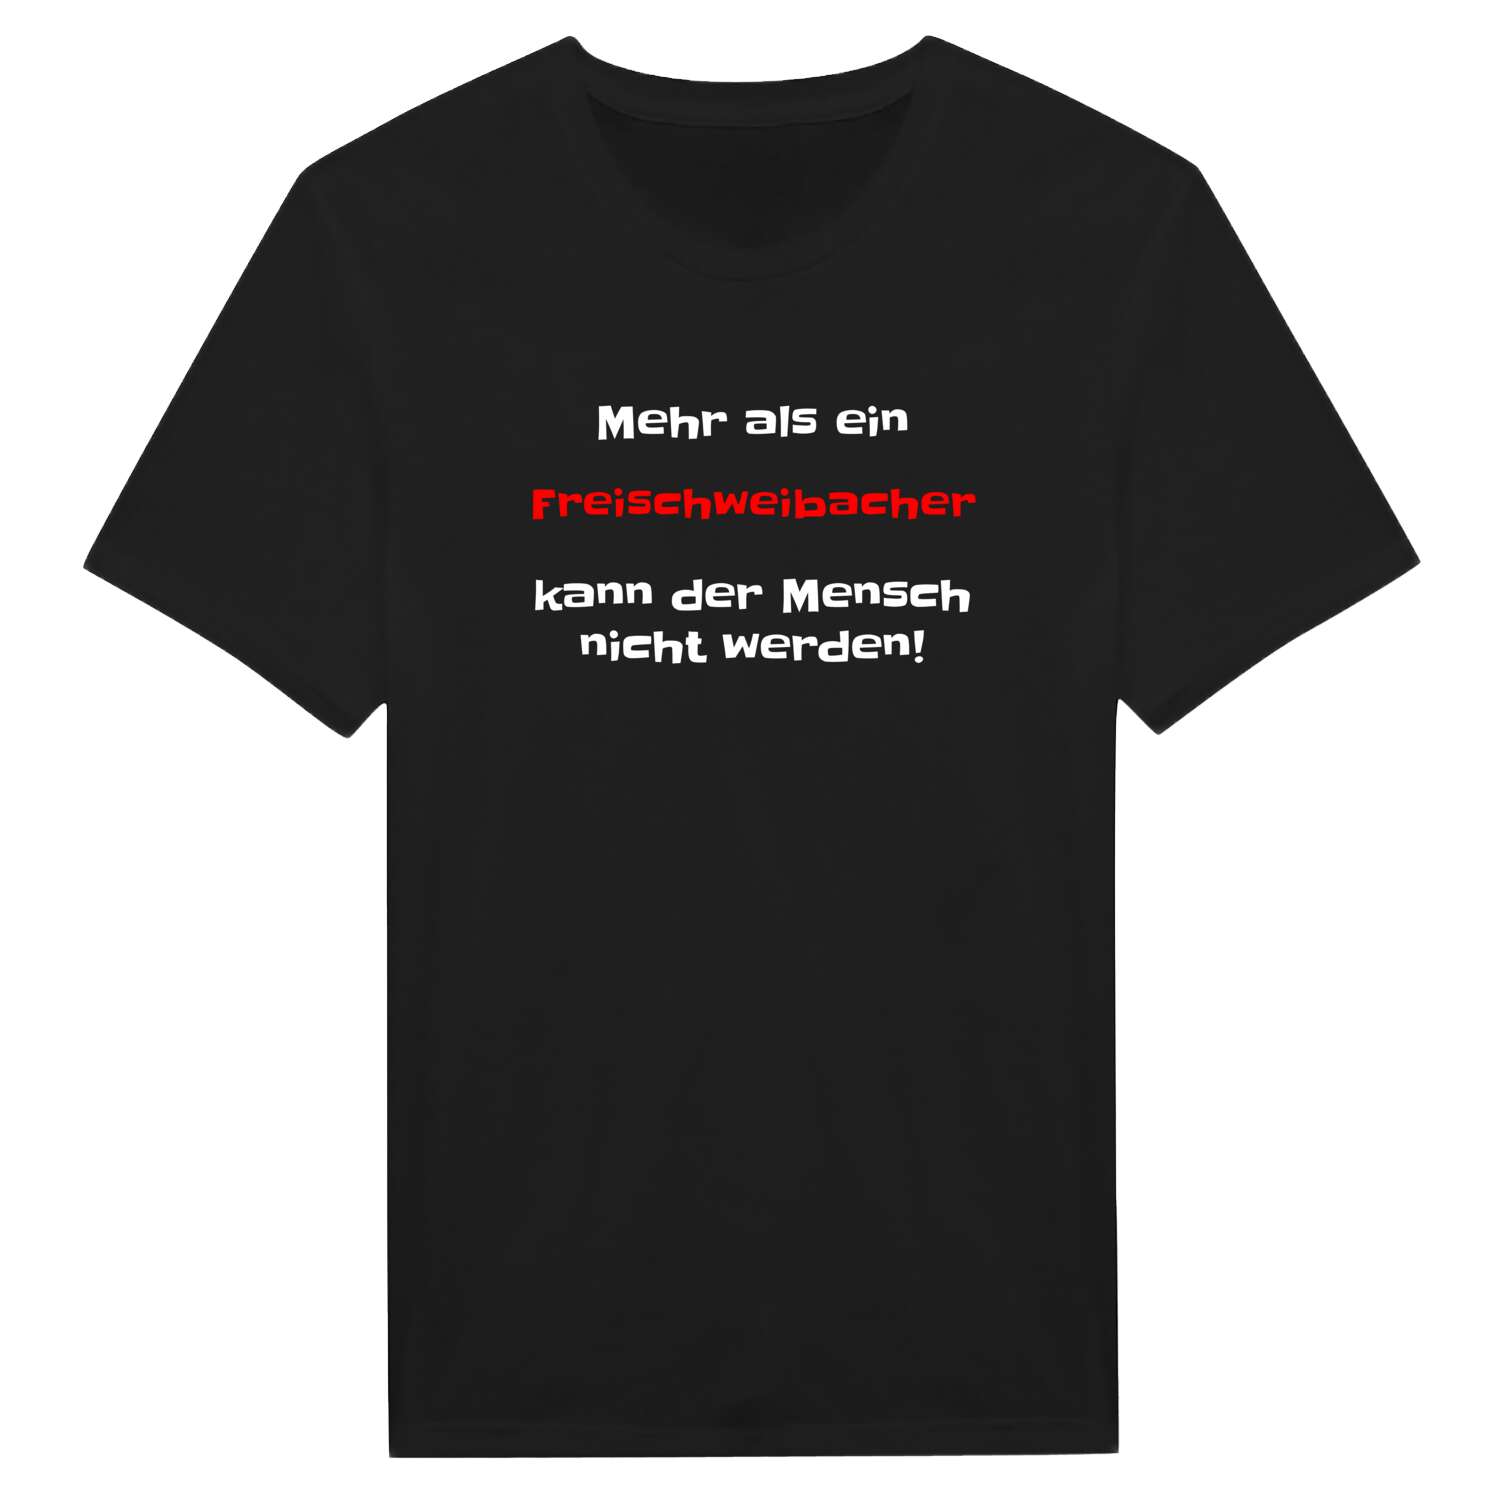 Freischweibach T-Shirt »Mehr als ein«